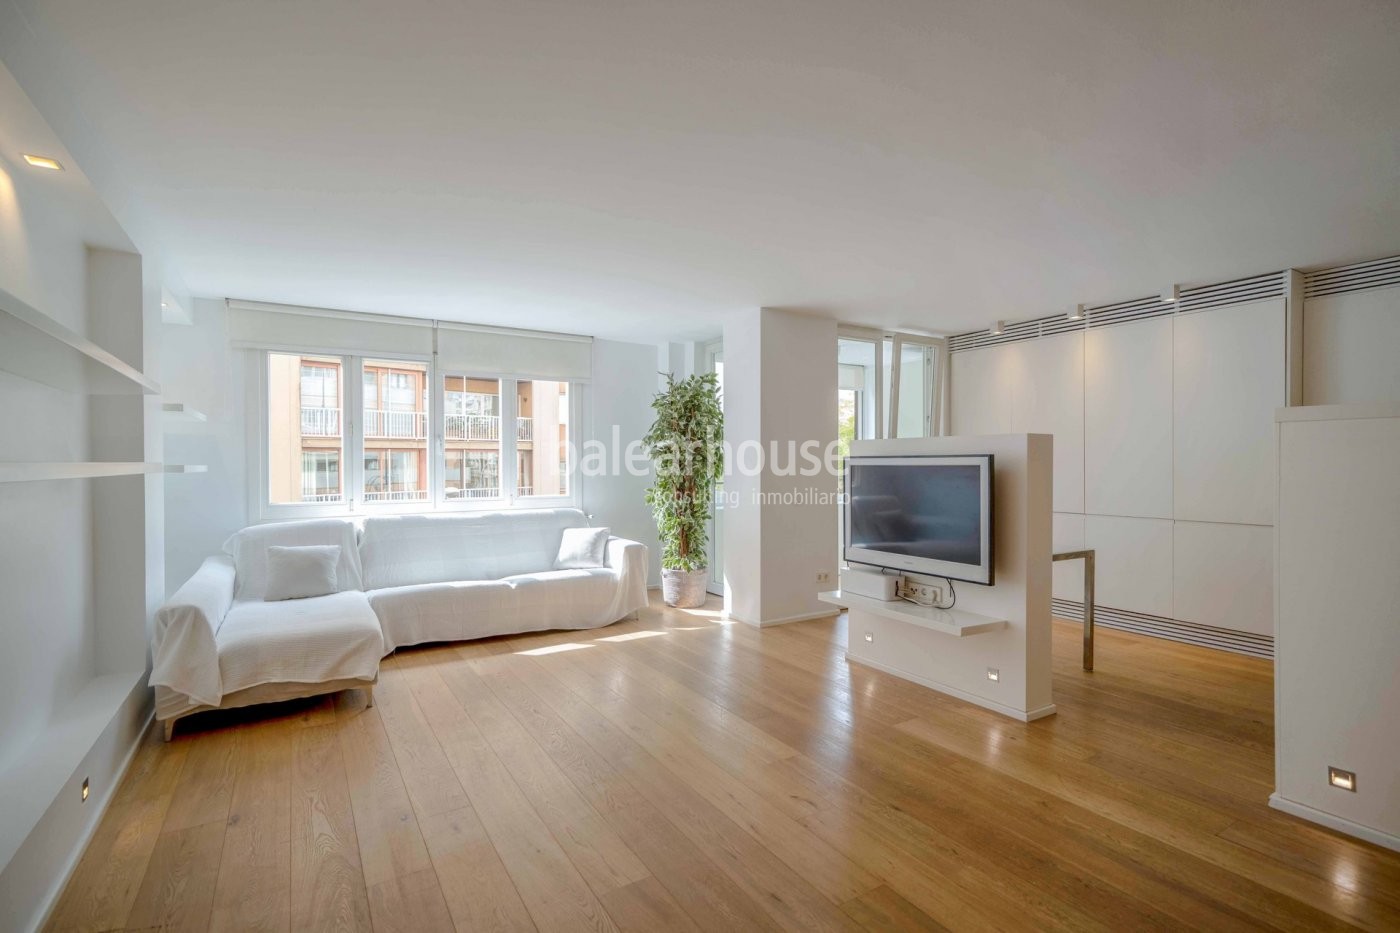 Excelente piso en el centro de Palma donde amplitud, confort y modernidad se unen a altas calidades.